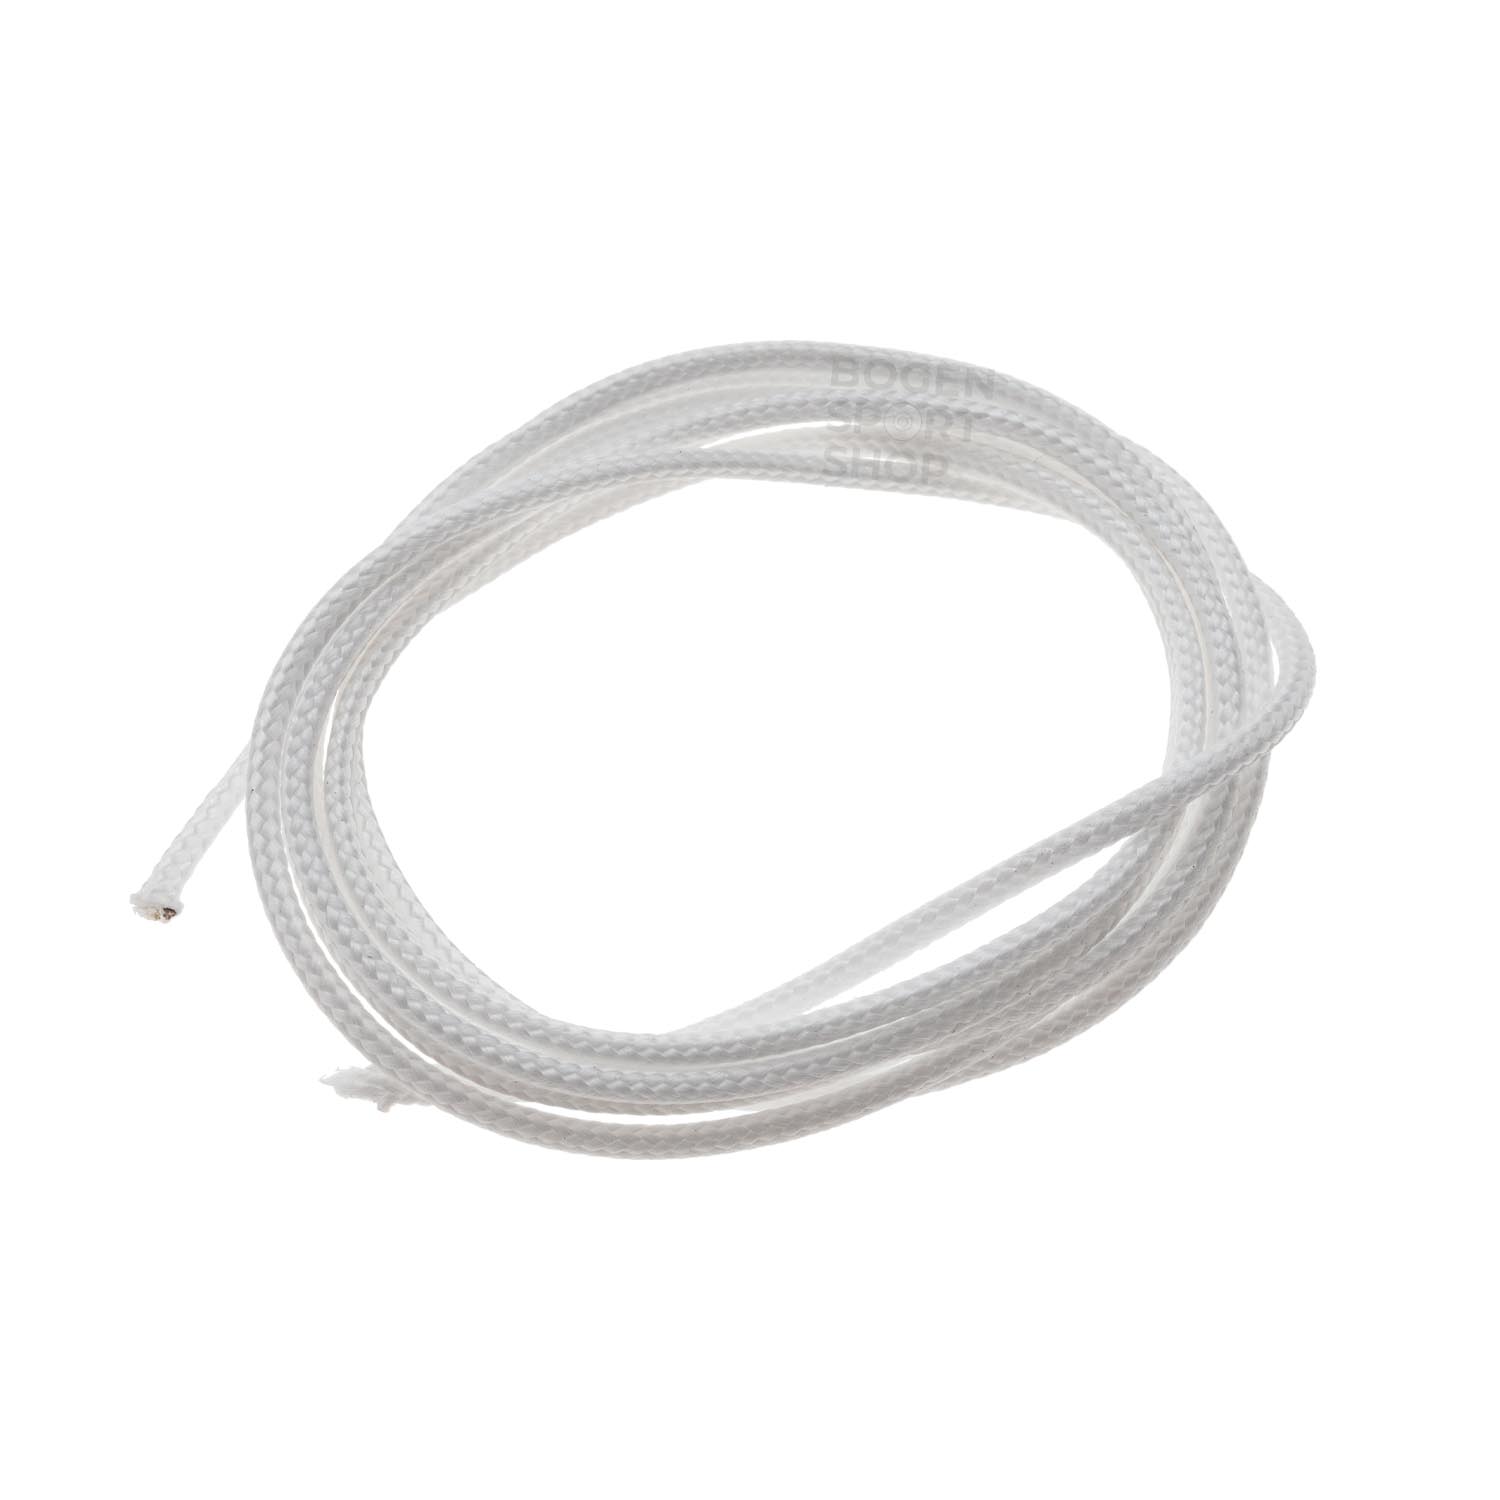  Buy BCY D-Loop Rope .060 / 1.6 mm #23 Spectra White -  1 m online